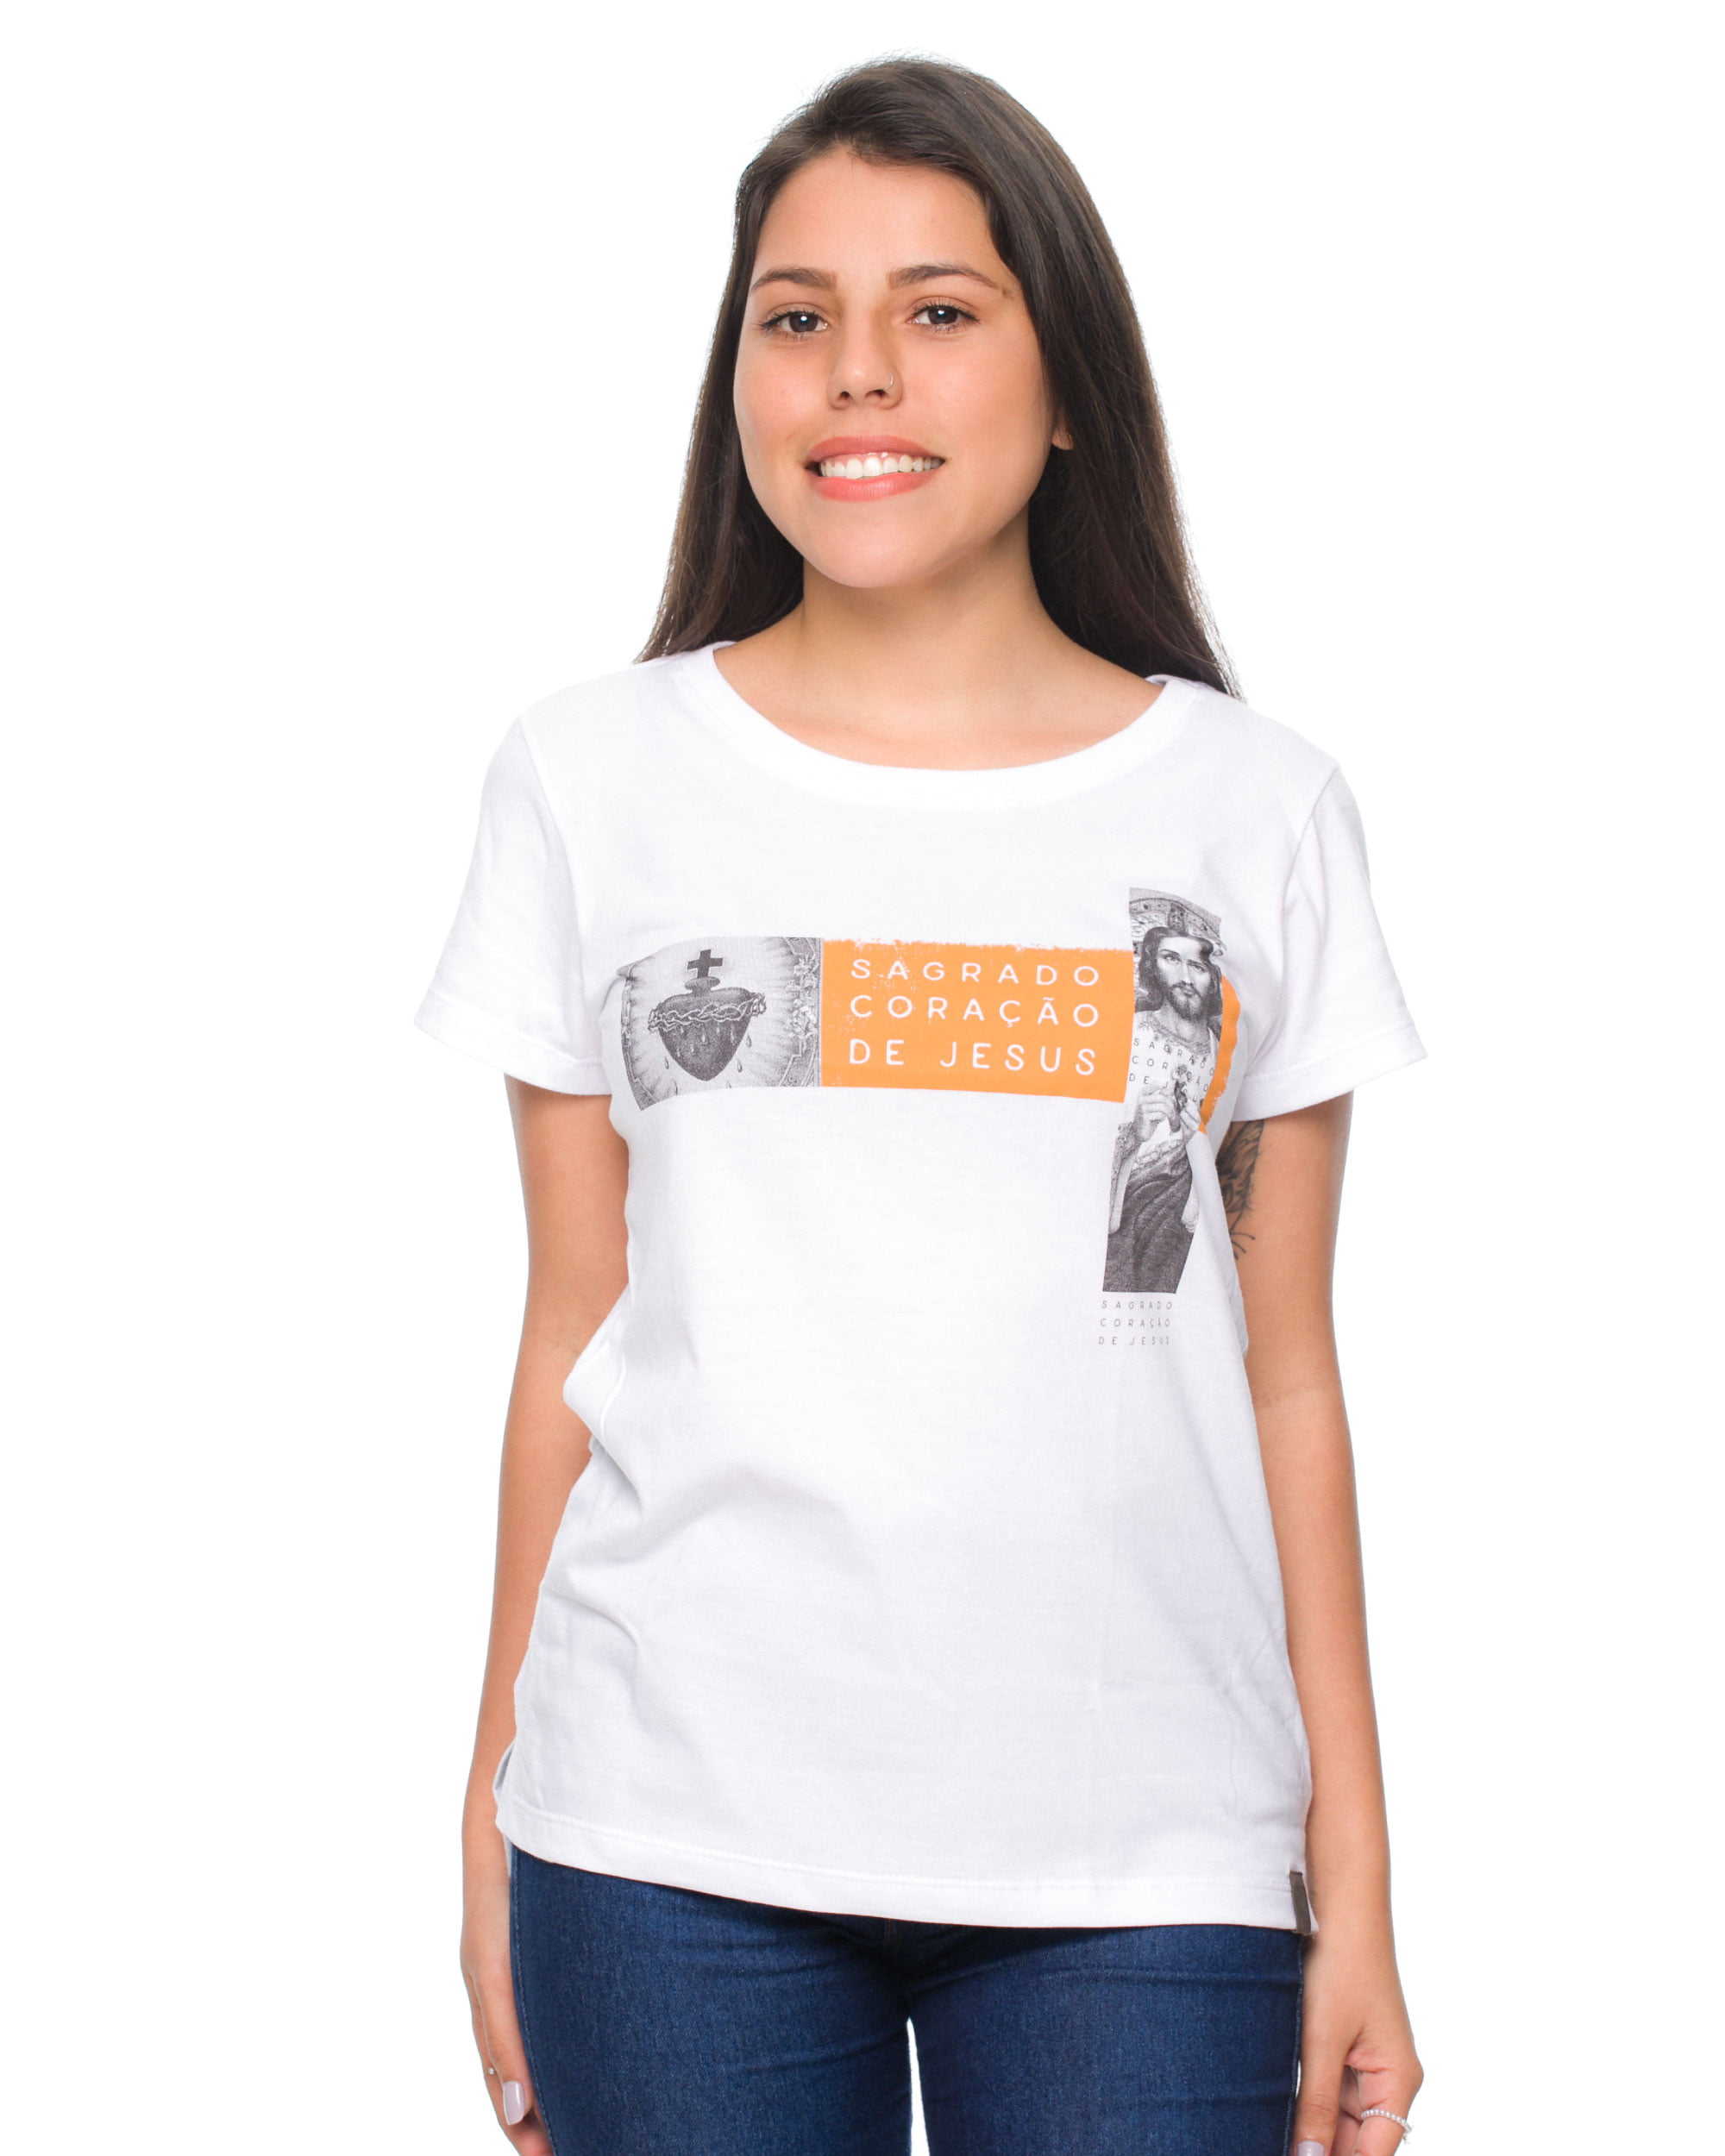 T-Shirt Sagrado Coração de Jesus - Estampa